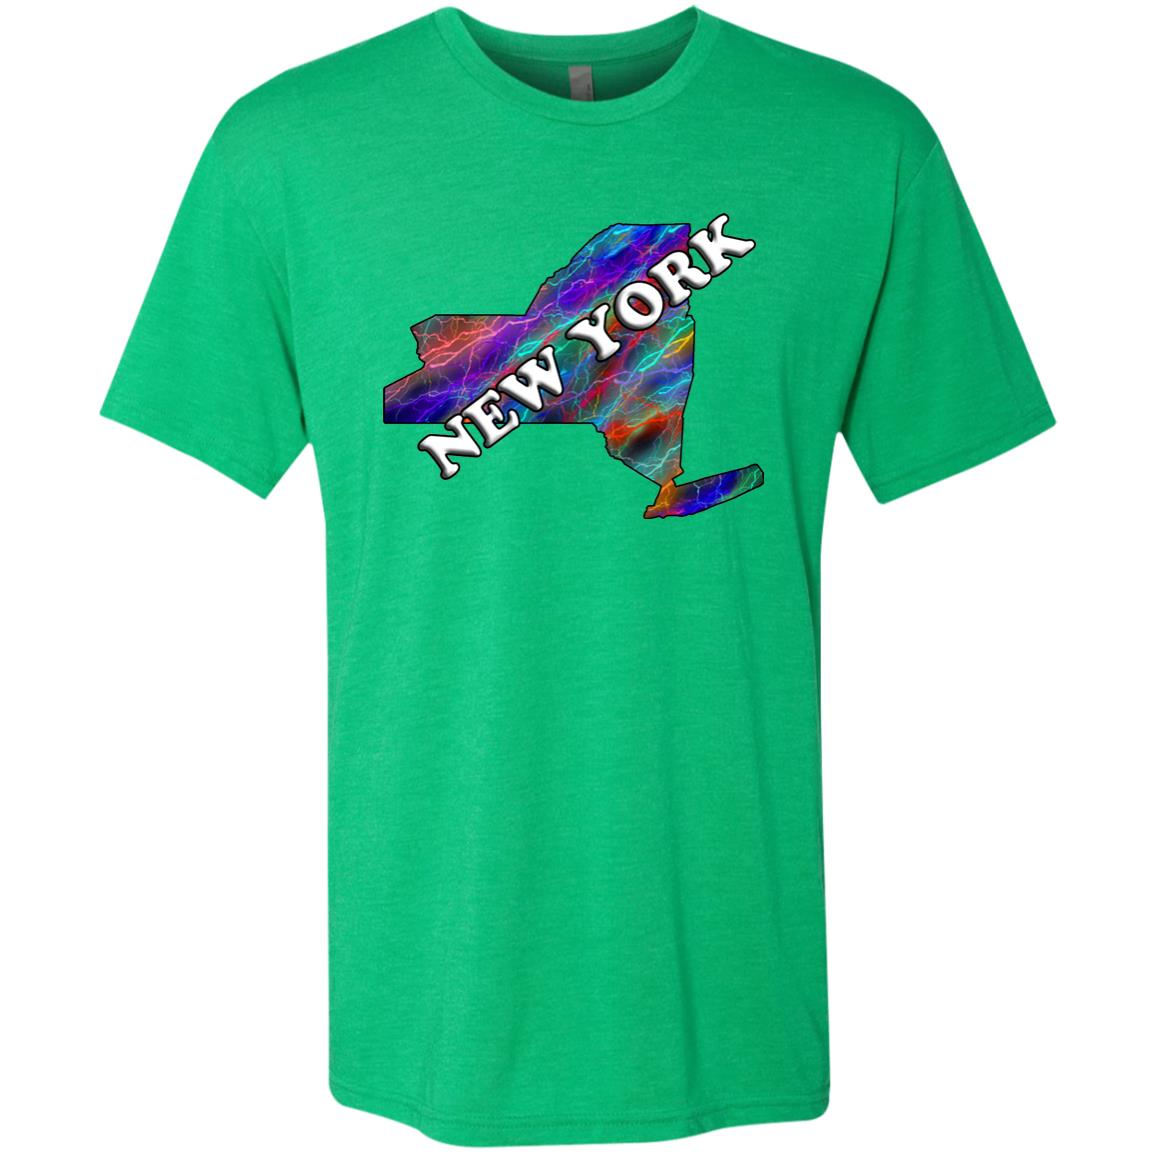 New York State T-Shirt